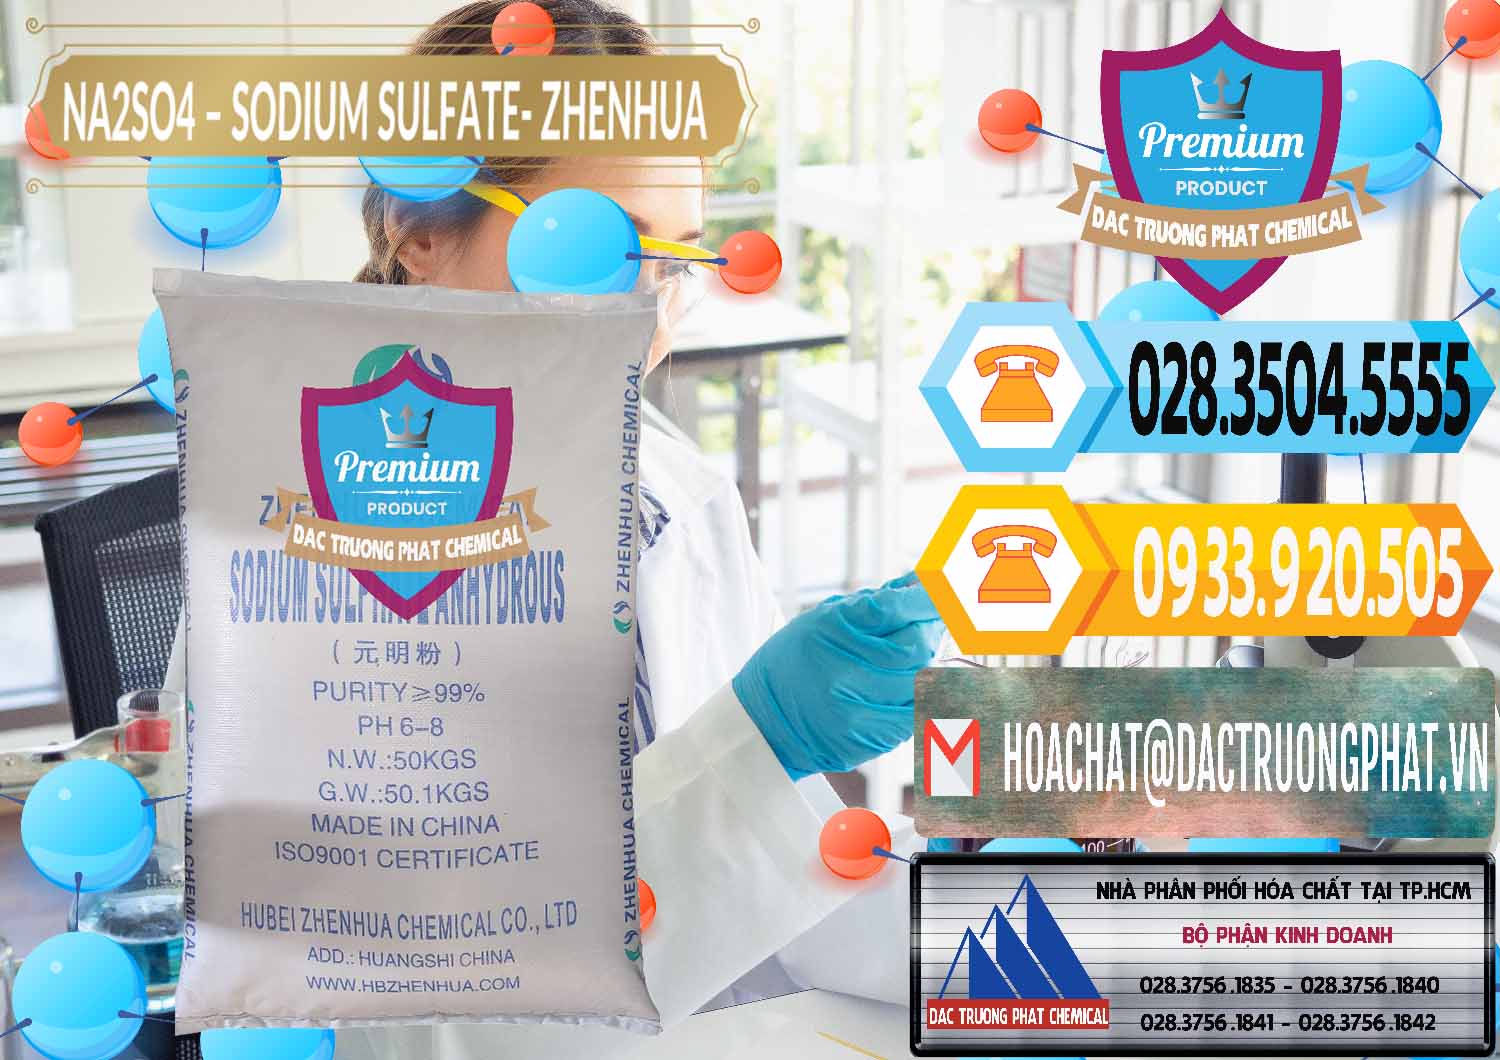 Nơi chuyên phân phối _ bán Sodium Sulphate - Muối Sunfat Na2SO4 Zhenhua Trung Quốc China - 0101 - Đơn vị chuyên phân phối _ nhập khẩu hóa chất tại TP.HCM - hoachattayrua.net